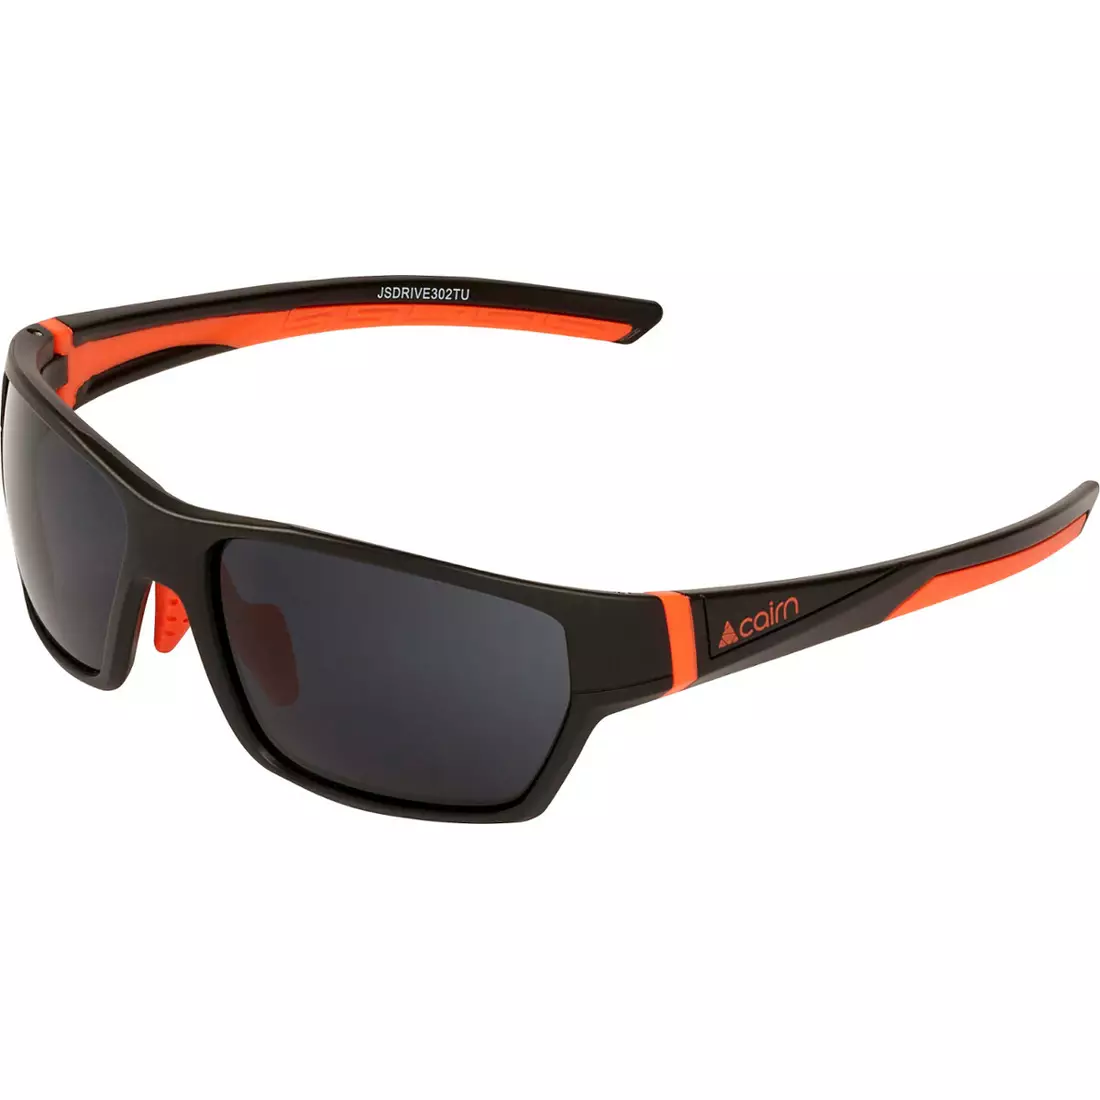 CAIRN Sportbrille für Kinder DRIVE J black/orange JSDRIVE302